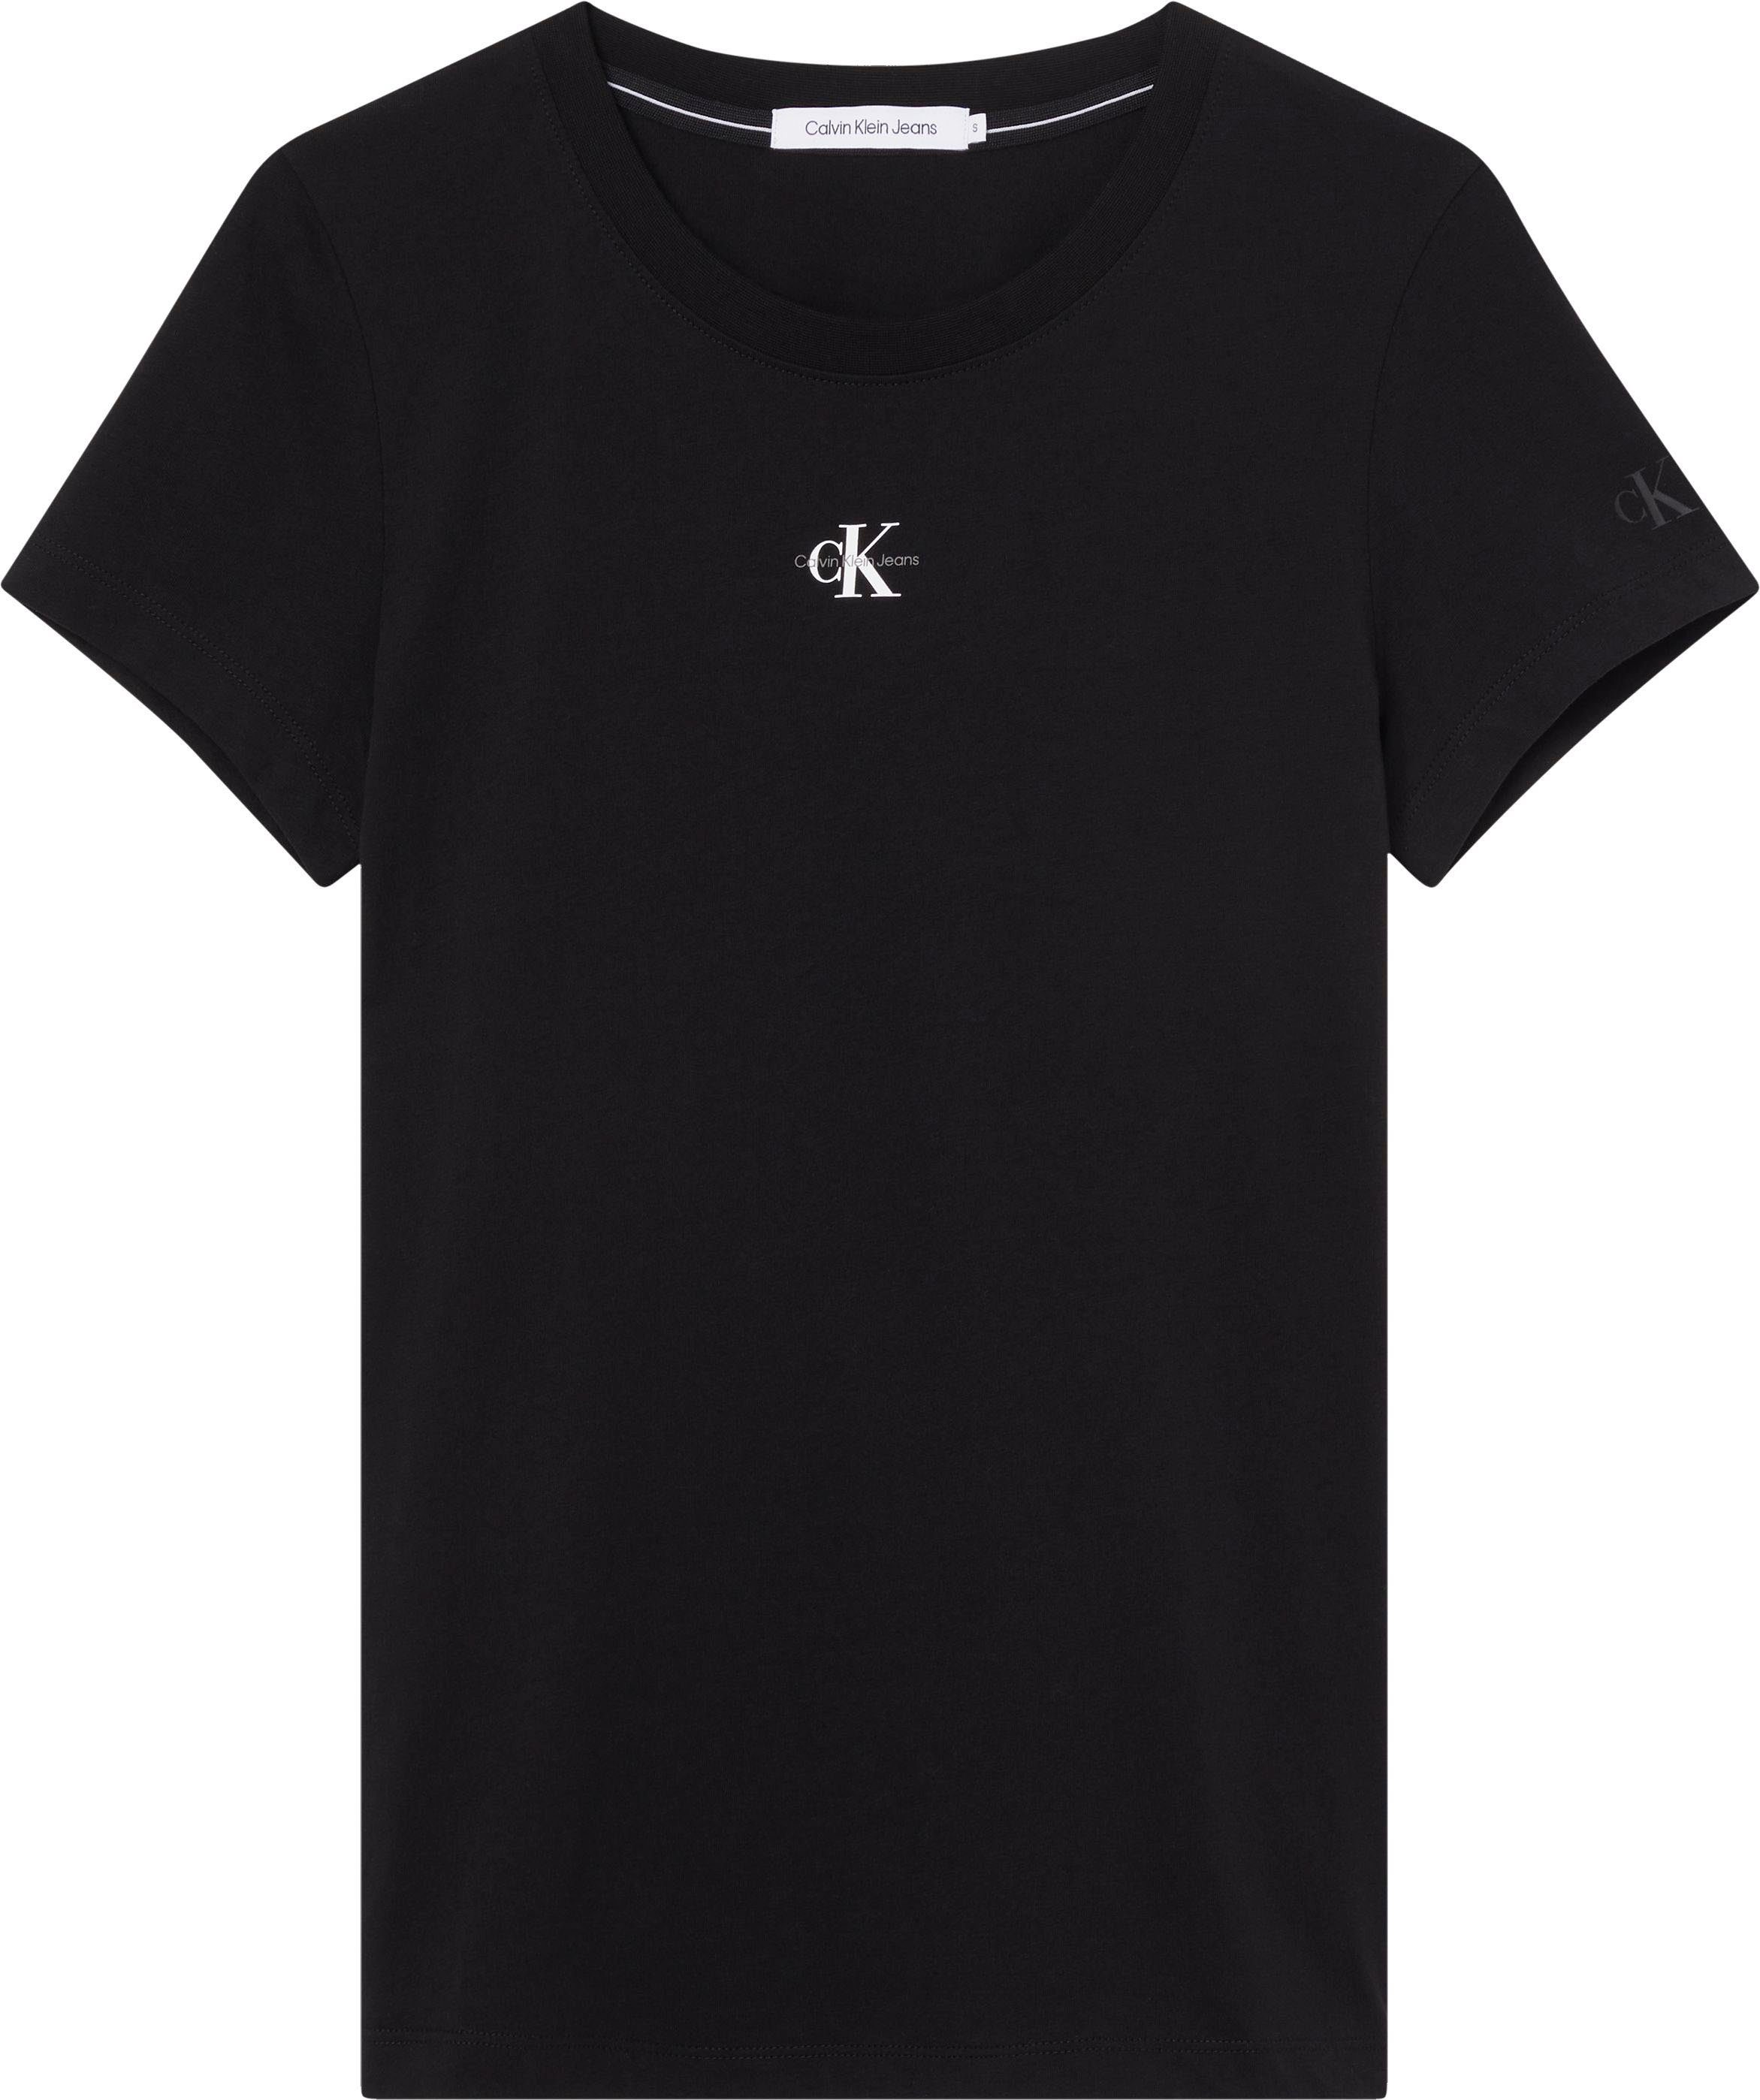 SLIM T-Shirt mit Ck TEE MONOLOGO Rundhalsausschnitt FIT MICRO Black Klein Calvin Jeans